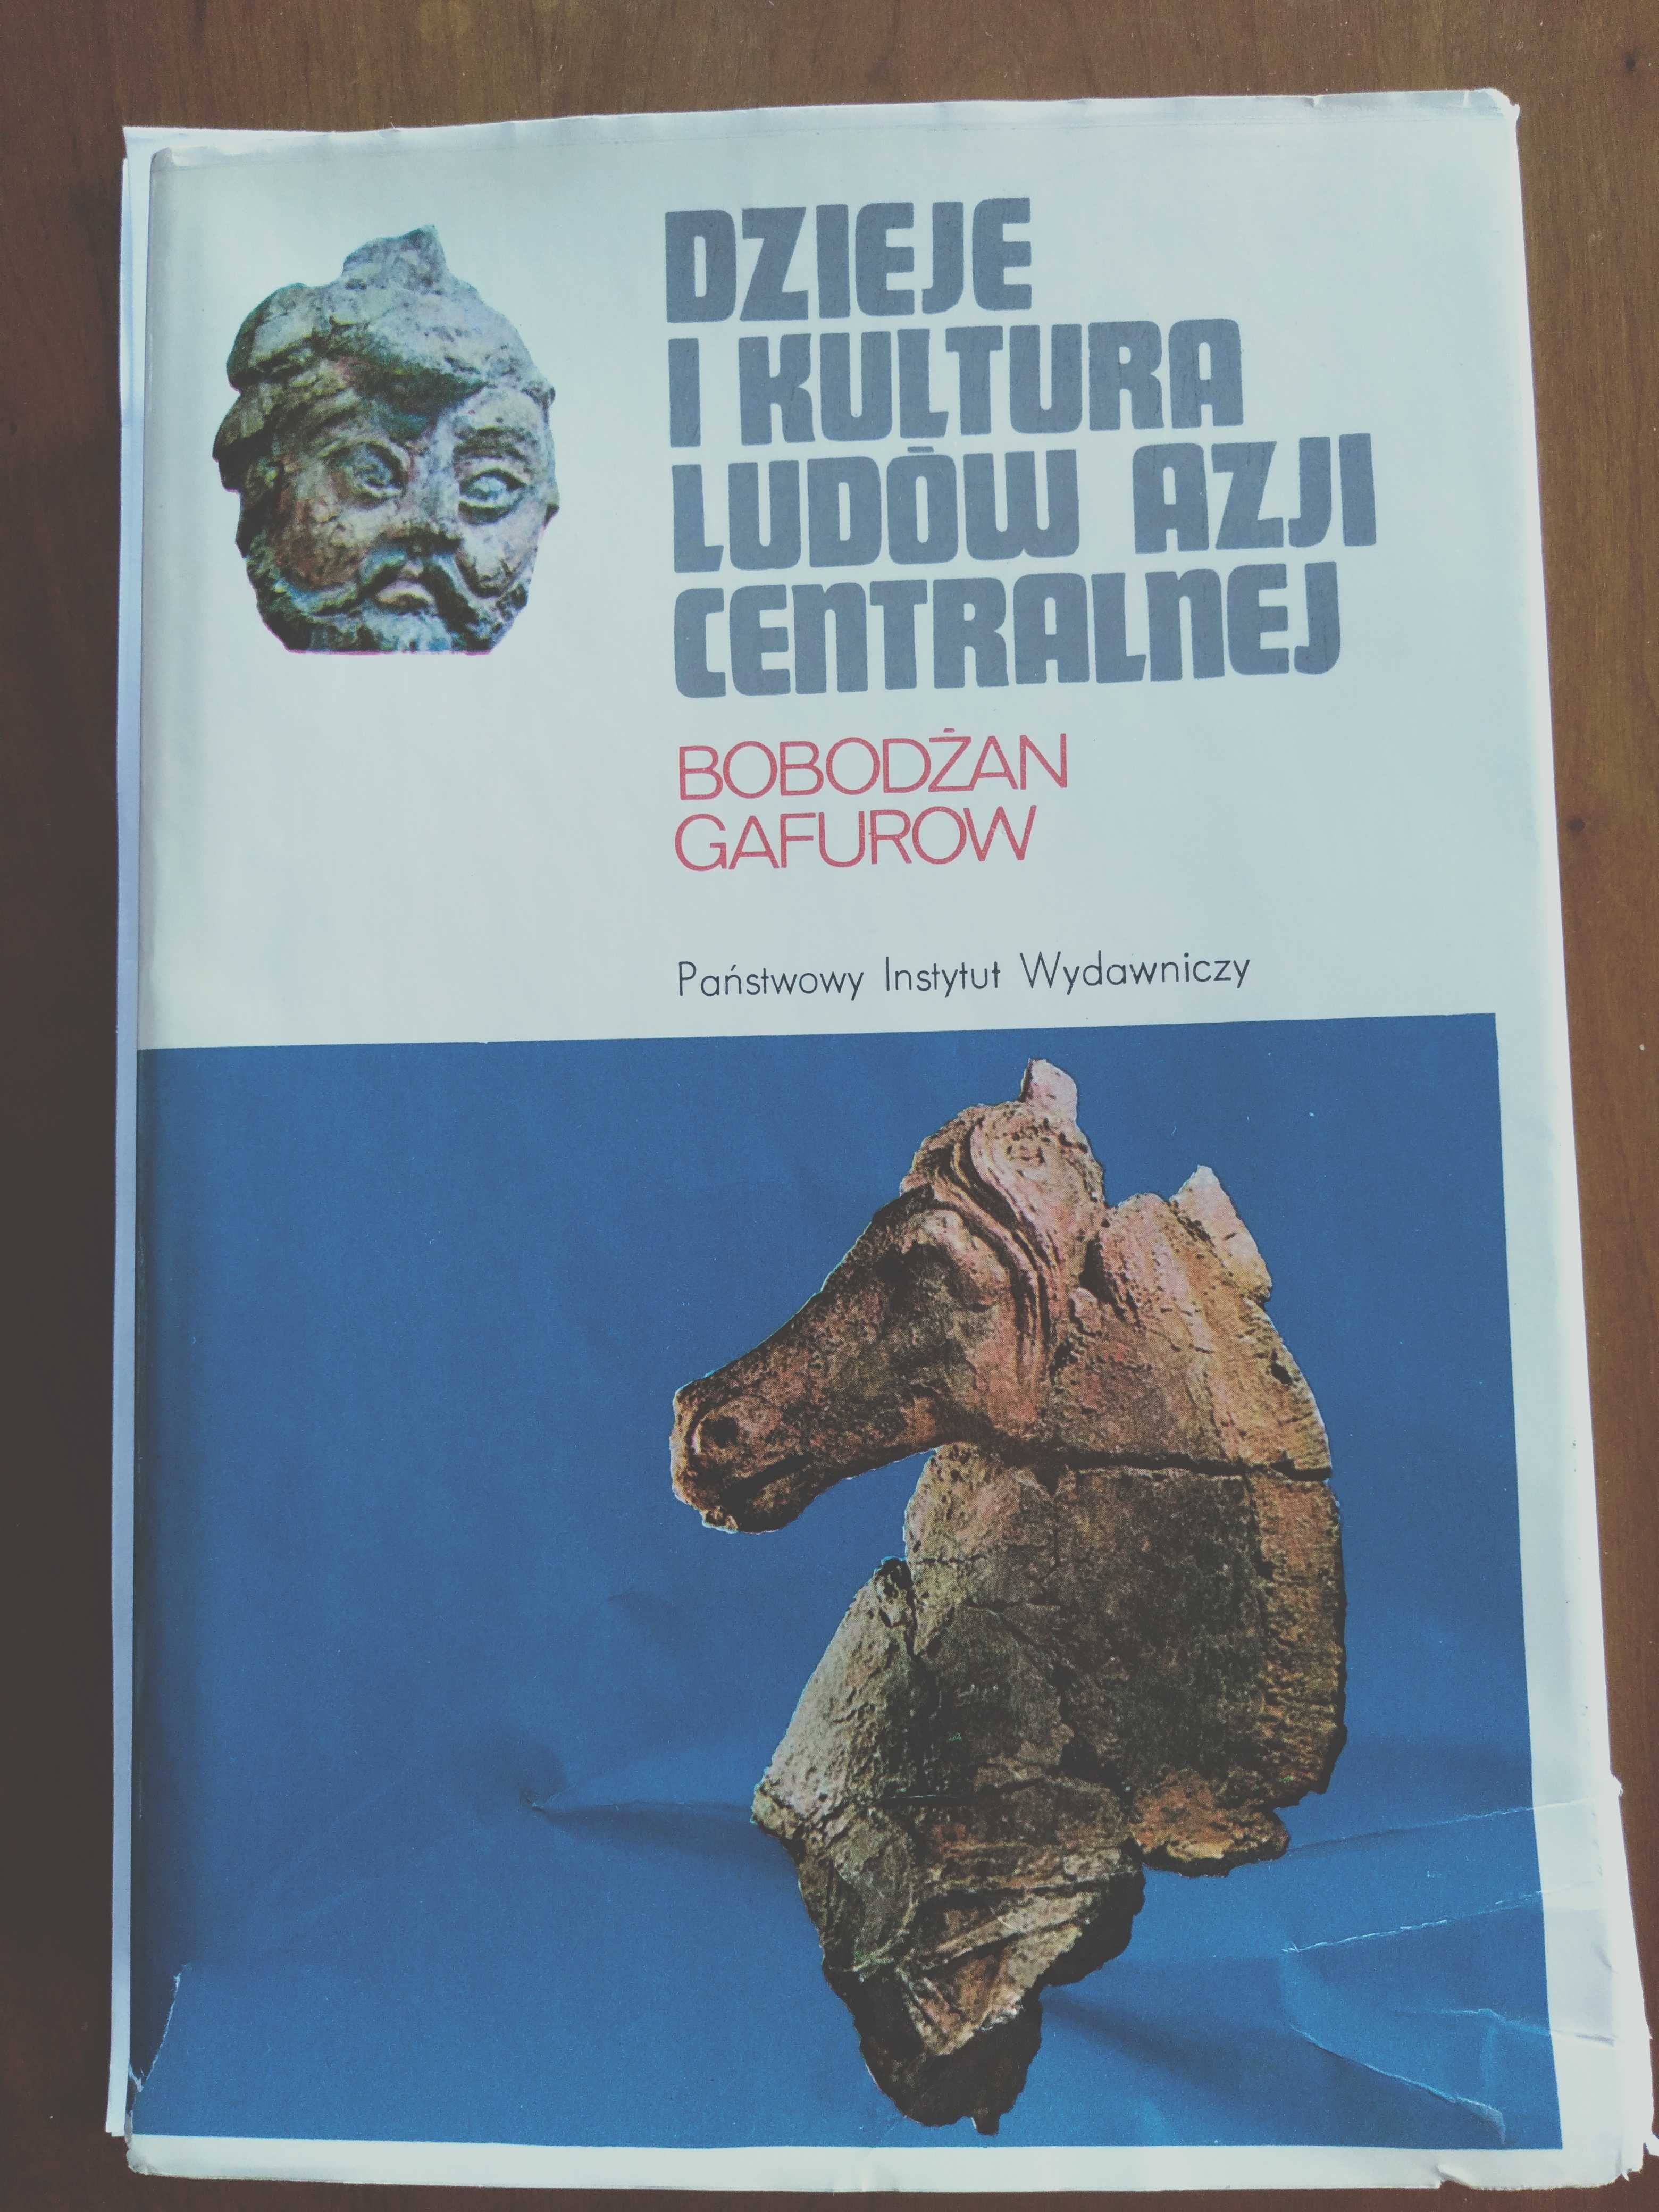 Dzieje i kultura ludów Azji centralnej
Bobodżan Gafurow